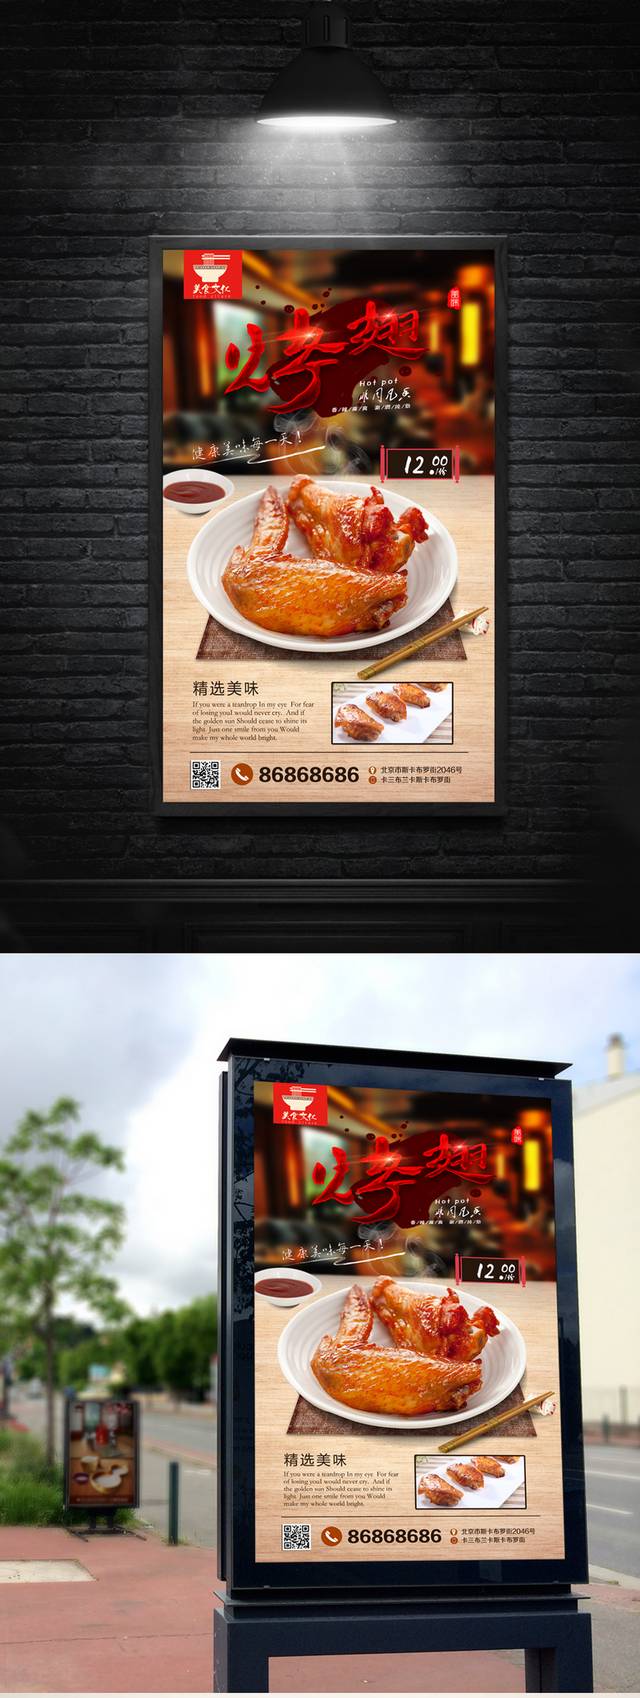 高清奥尔良烤翅文化宣传海报设计